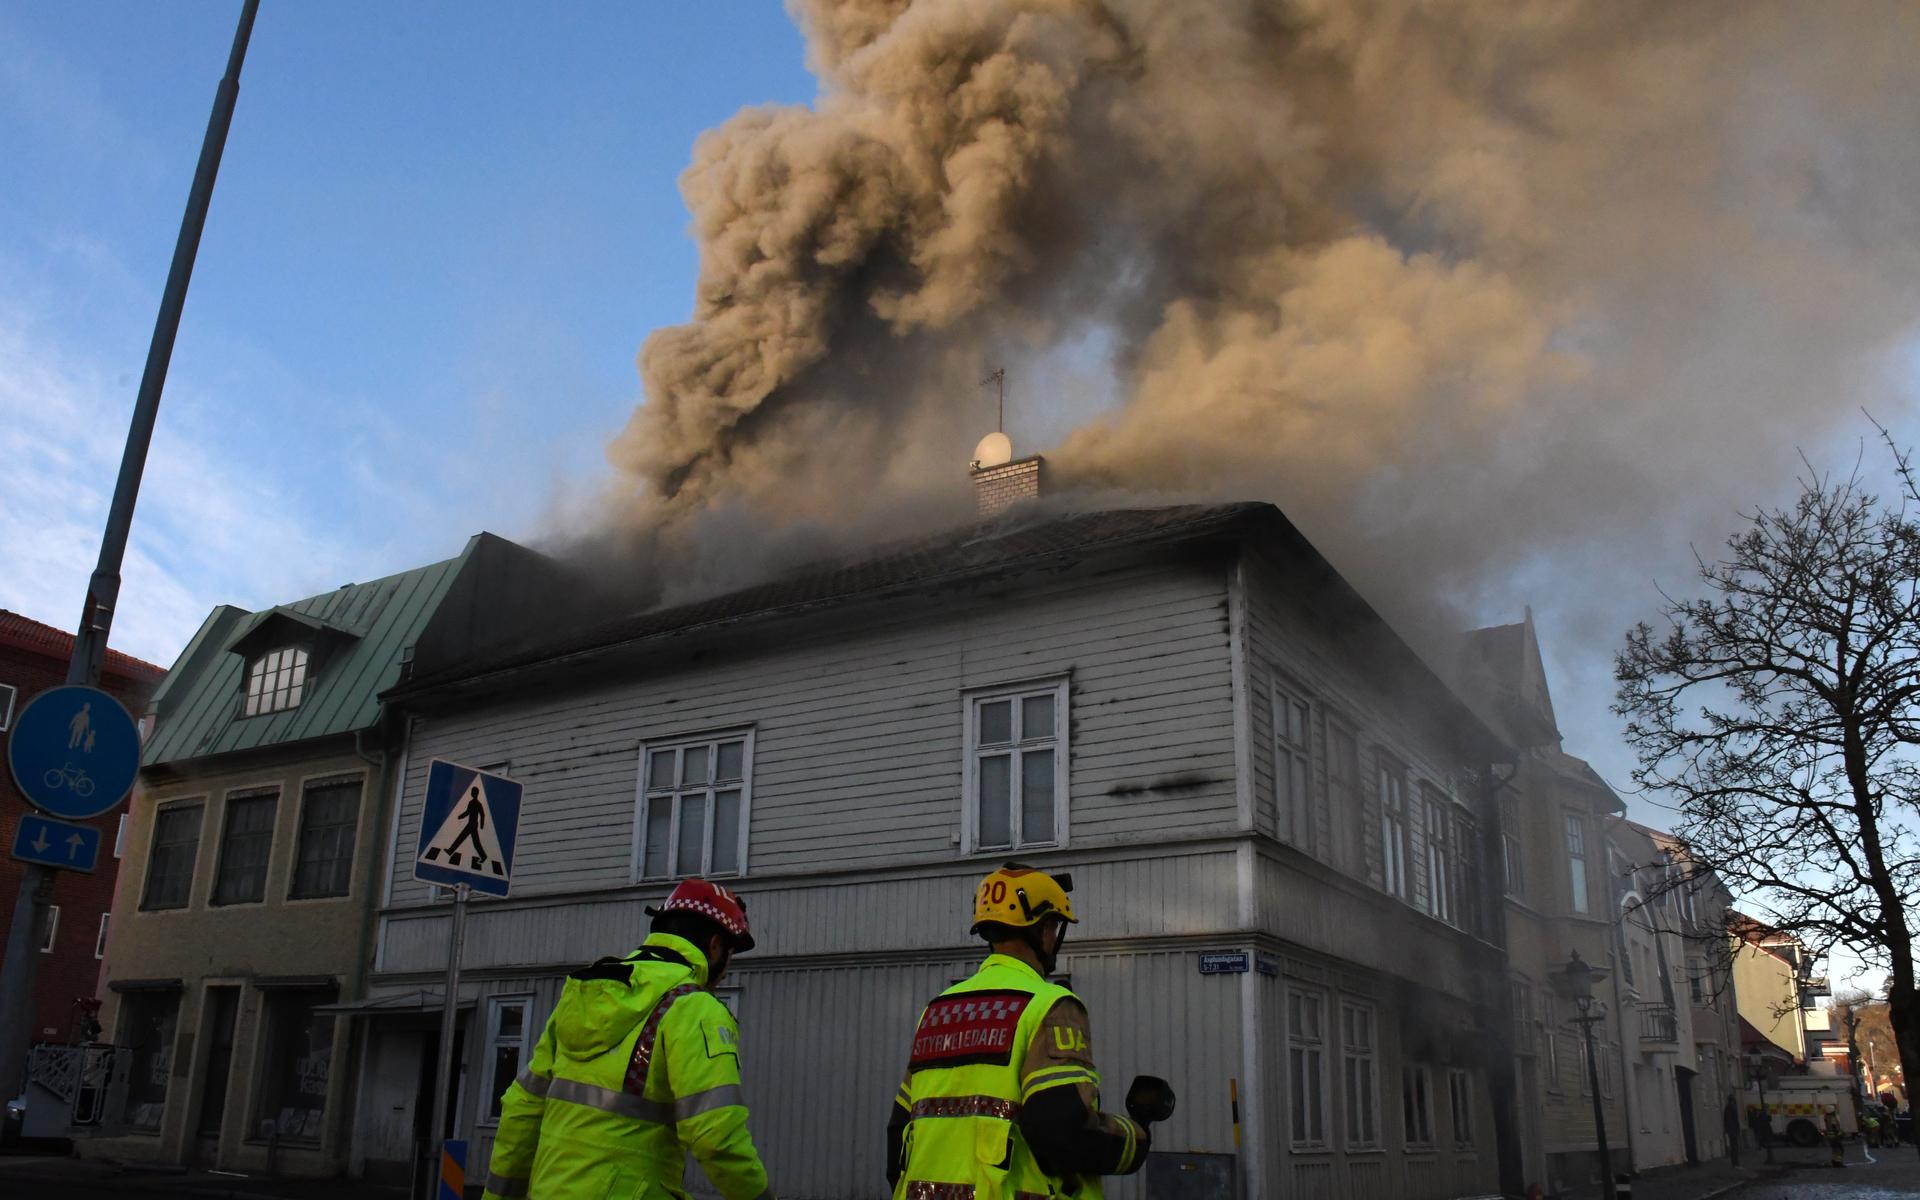 Huset som fattade eld under onsdagen går inte att rädda. Räddningstjänsten kommer låta huset brinna ned och arbeta med att förhindra spridning.